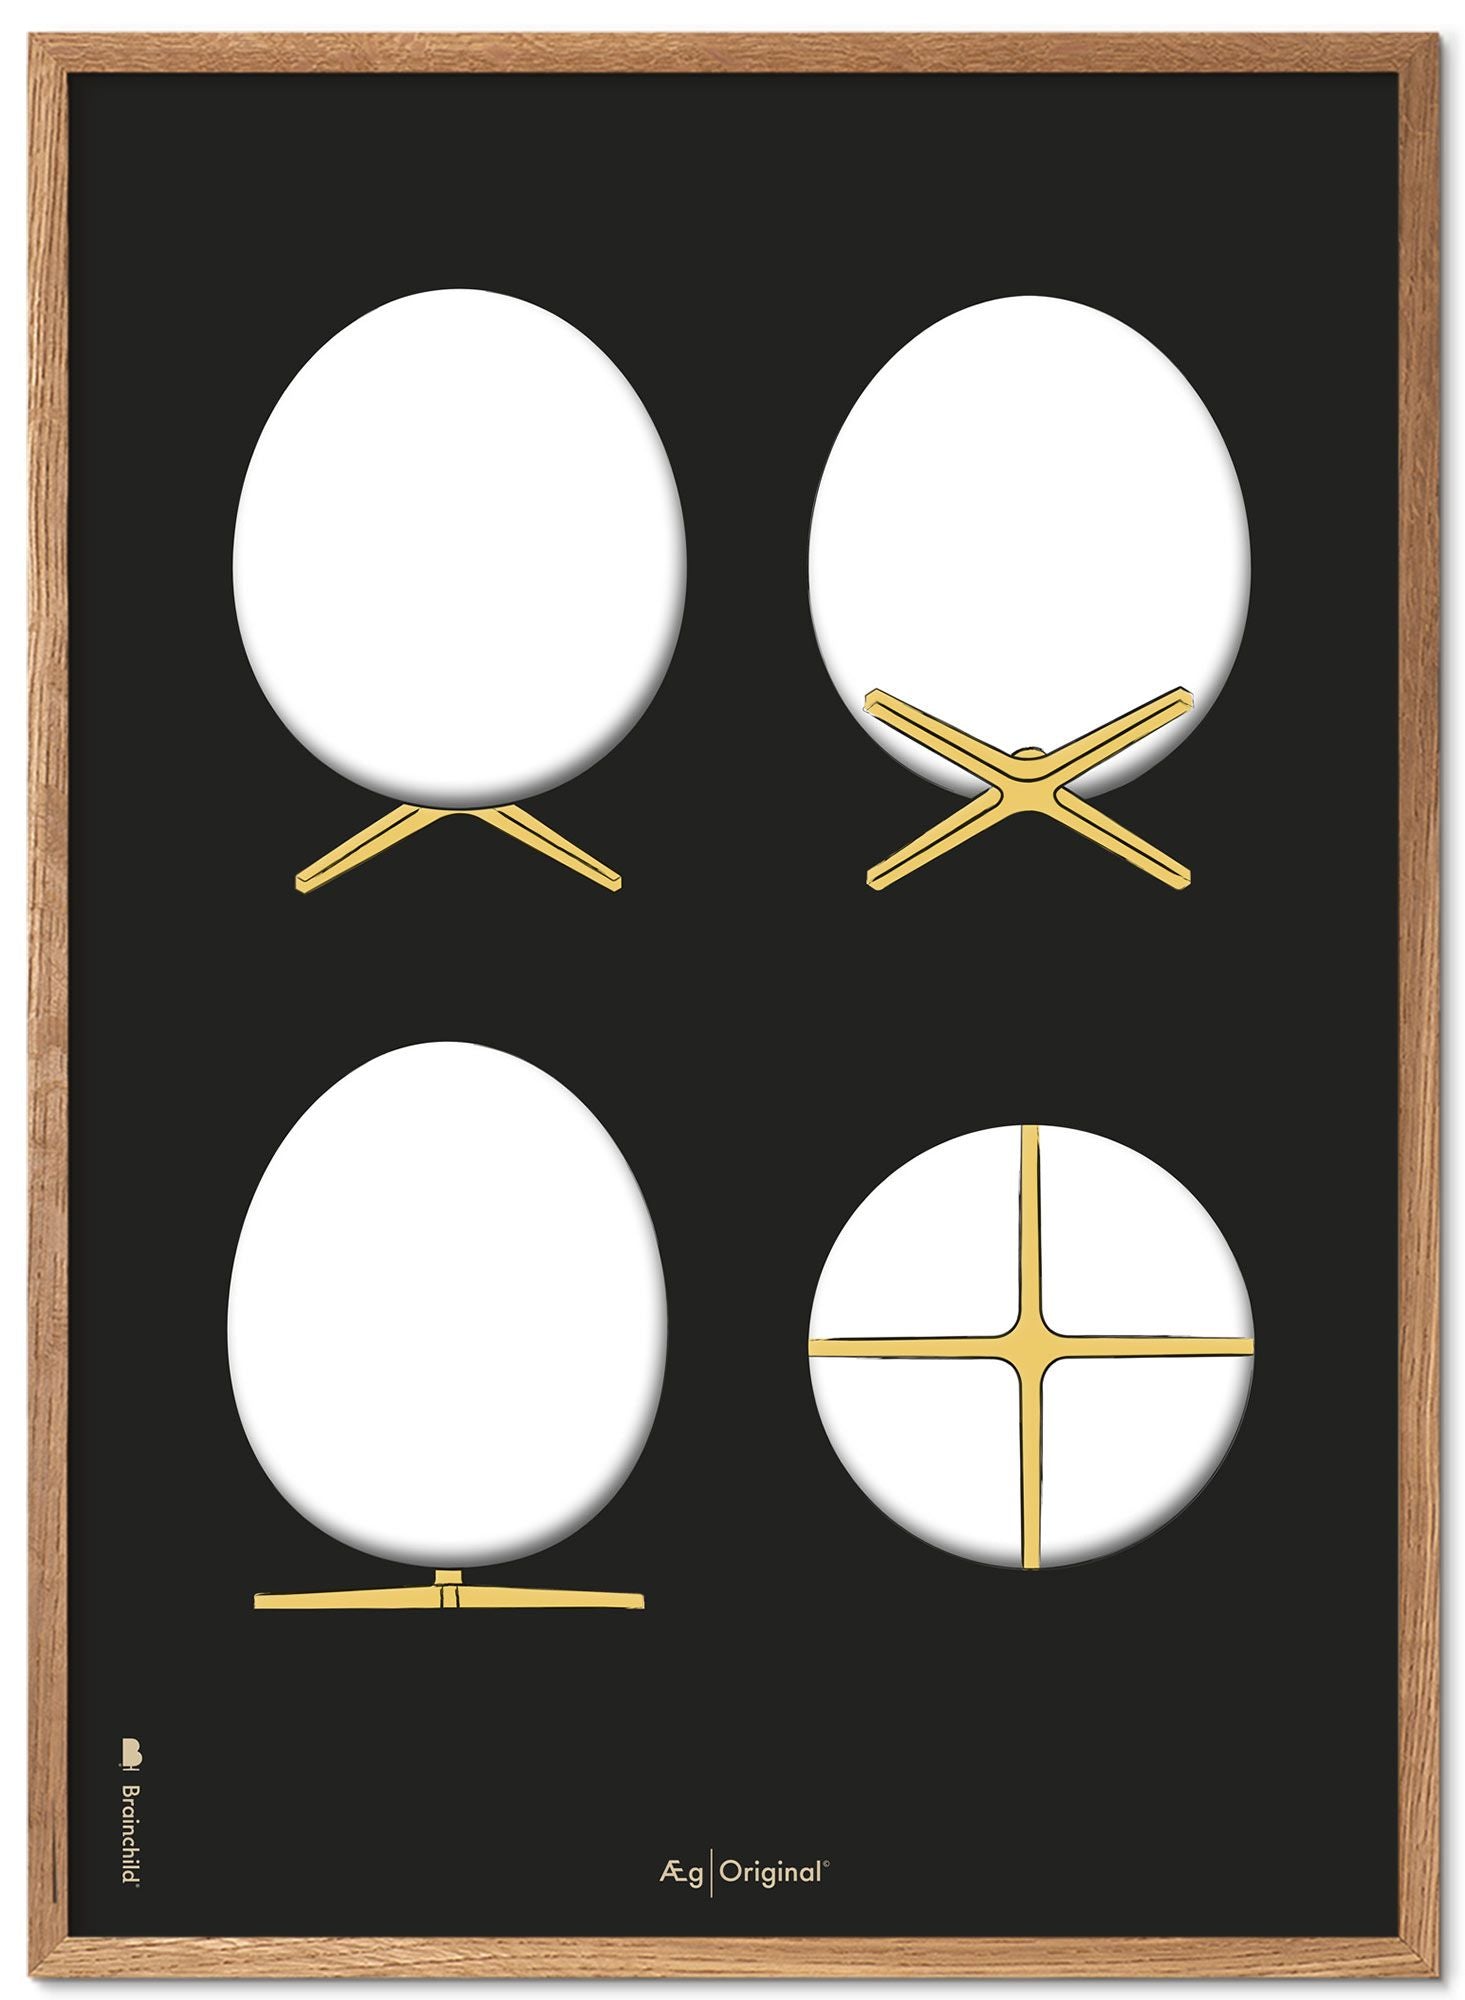 Brainchild the Egg Design Sketches Poster Frame in legno chiaro 30x40 cm, sfondo nero